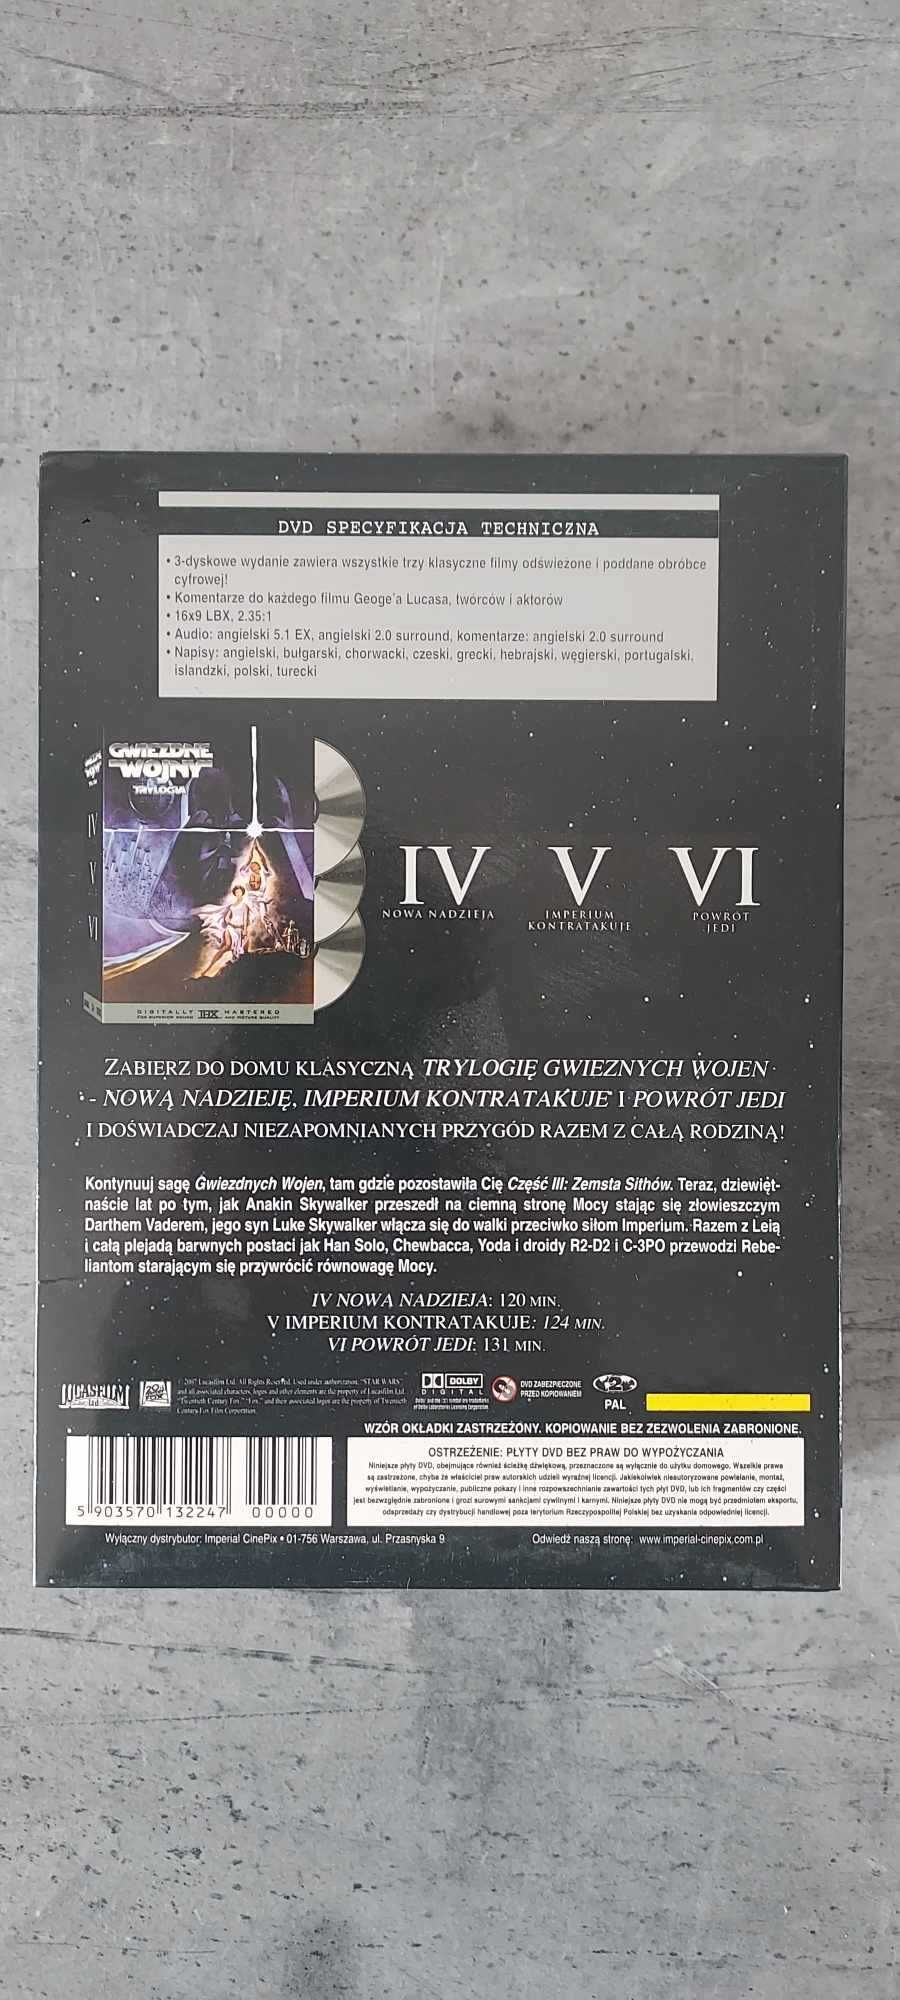 Gwiezdne Wojny Trylogia DVD IV - VI